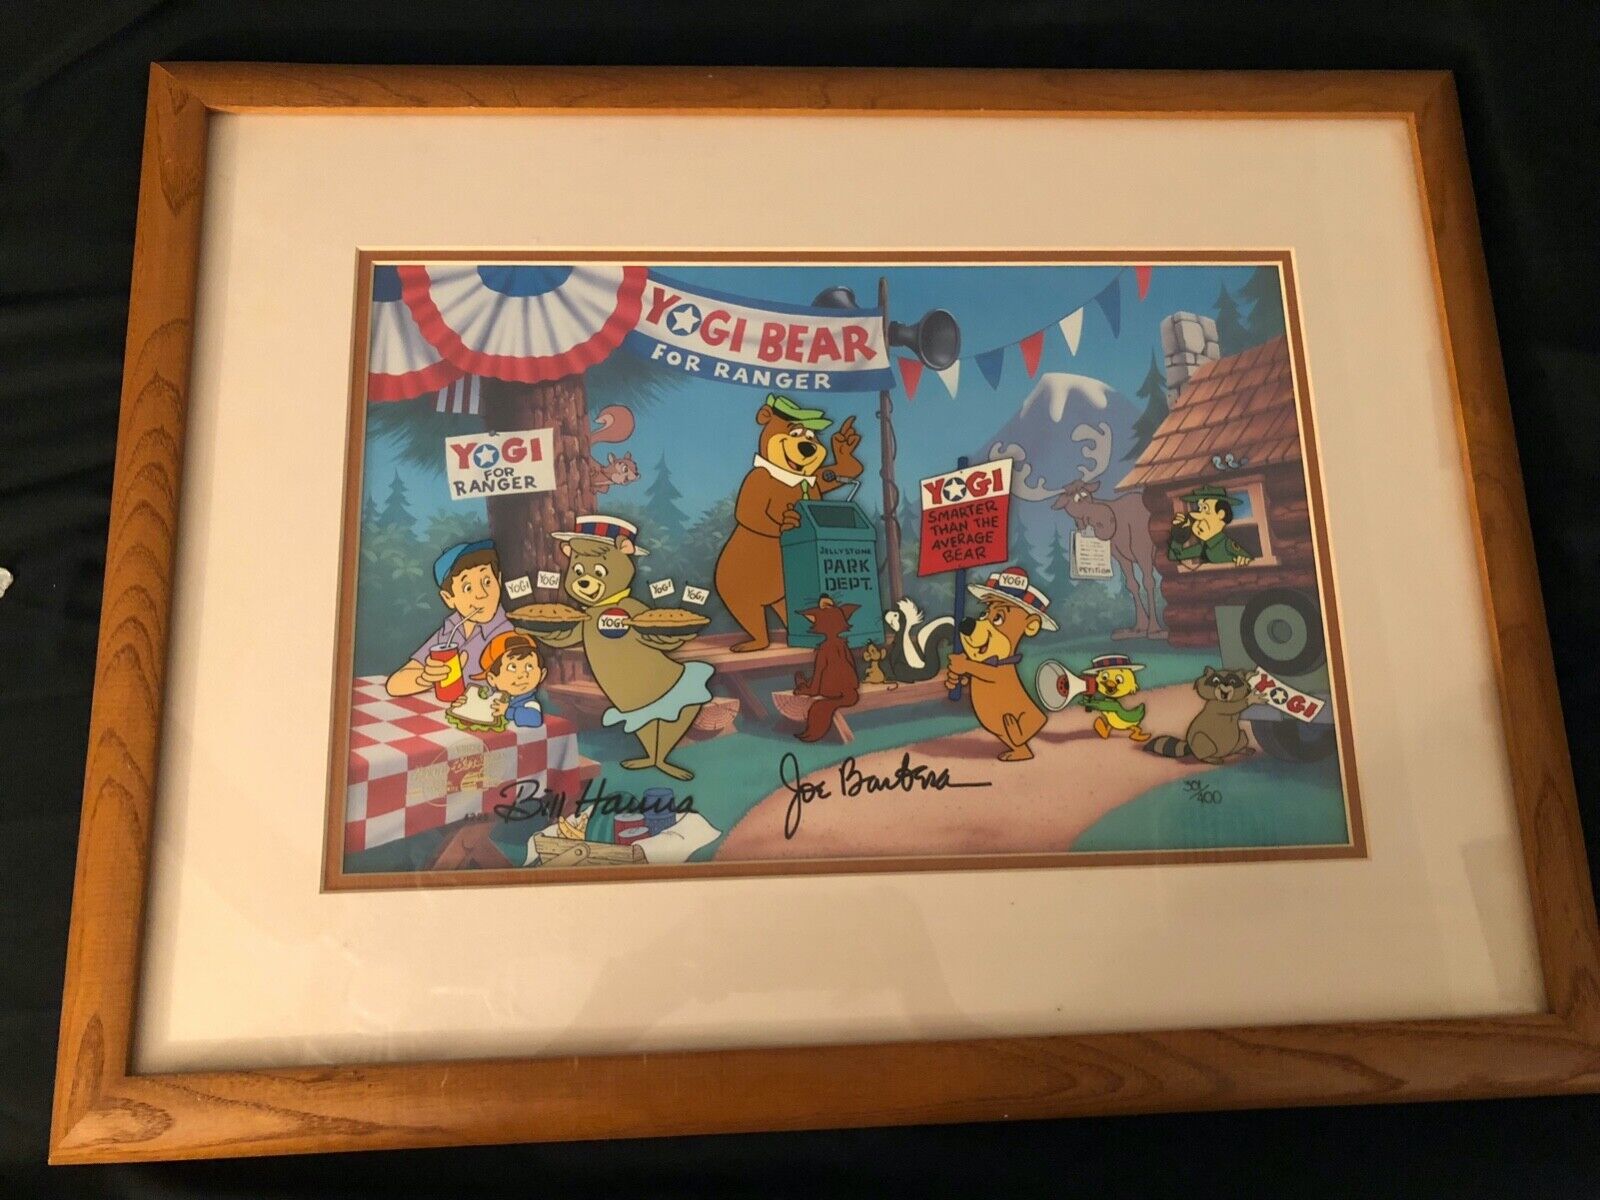 Yogi Bear For Ranger Cel, signed by Hanna & Barbera- Rare 301/400 Framed 